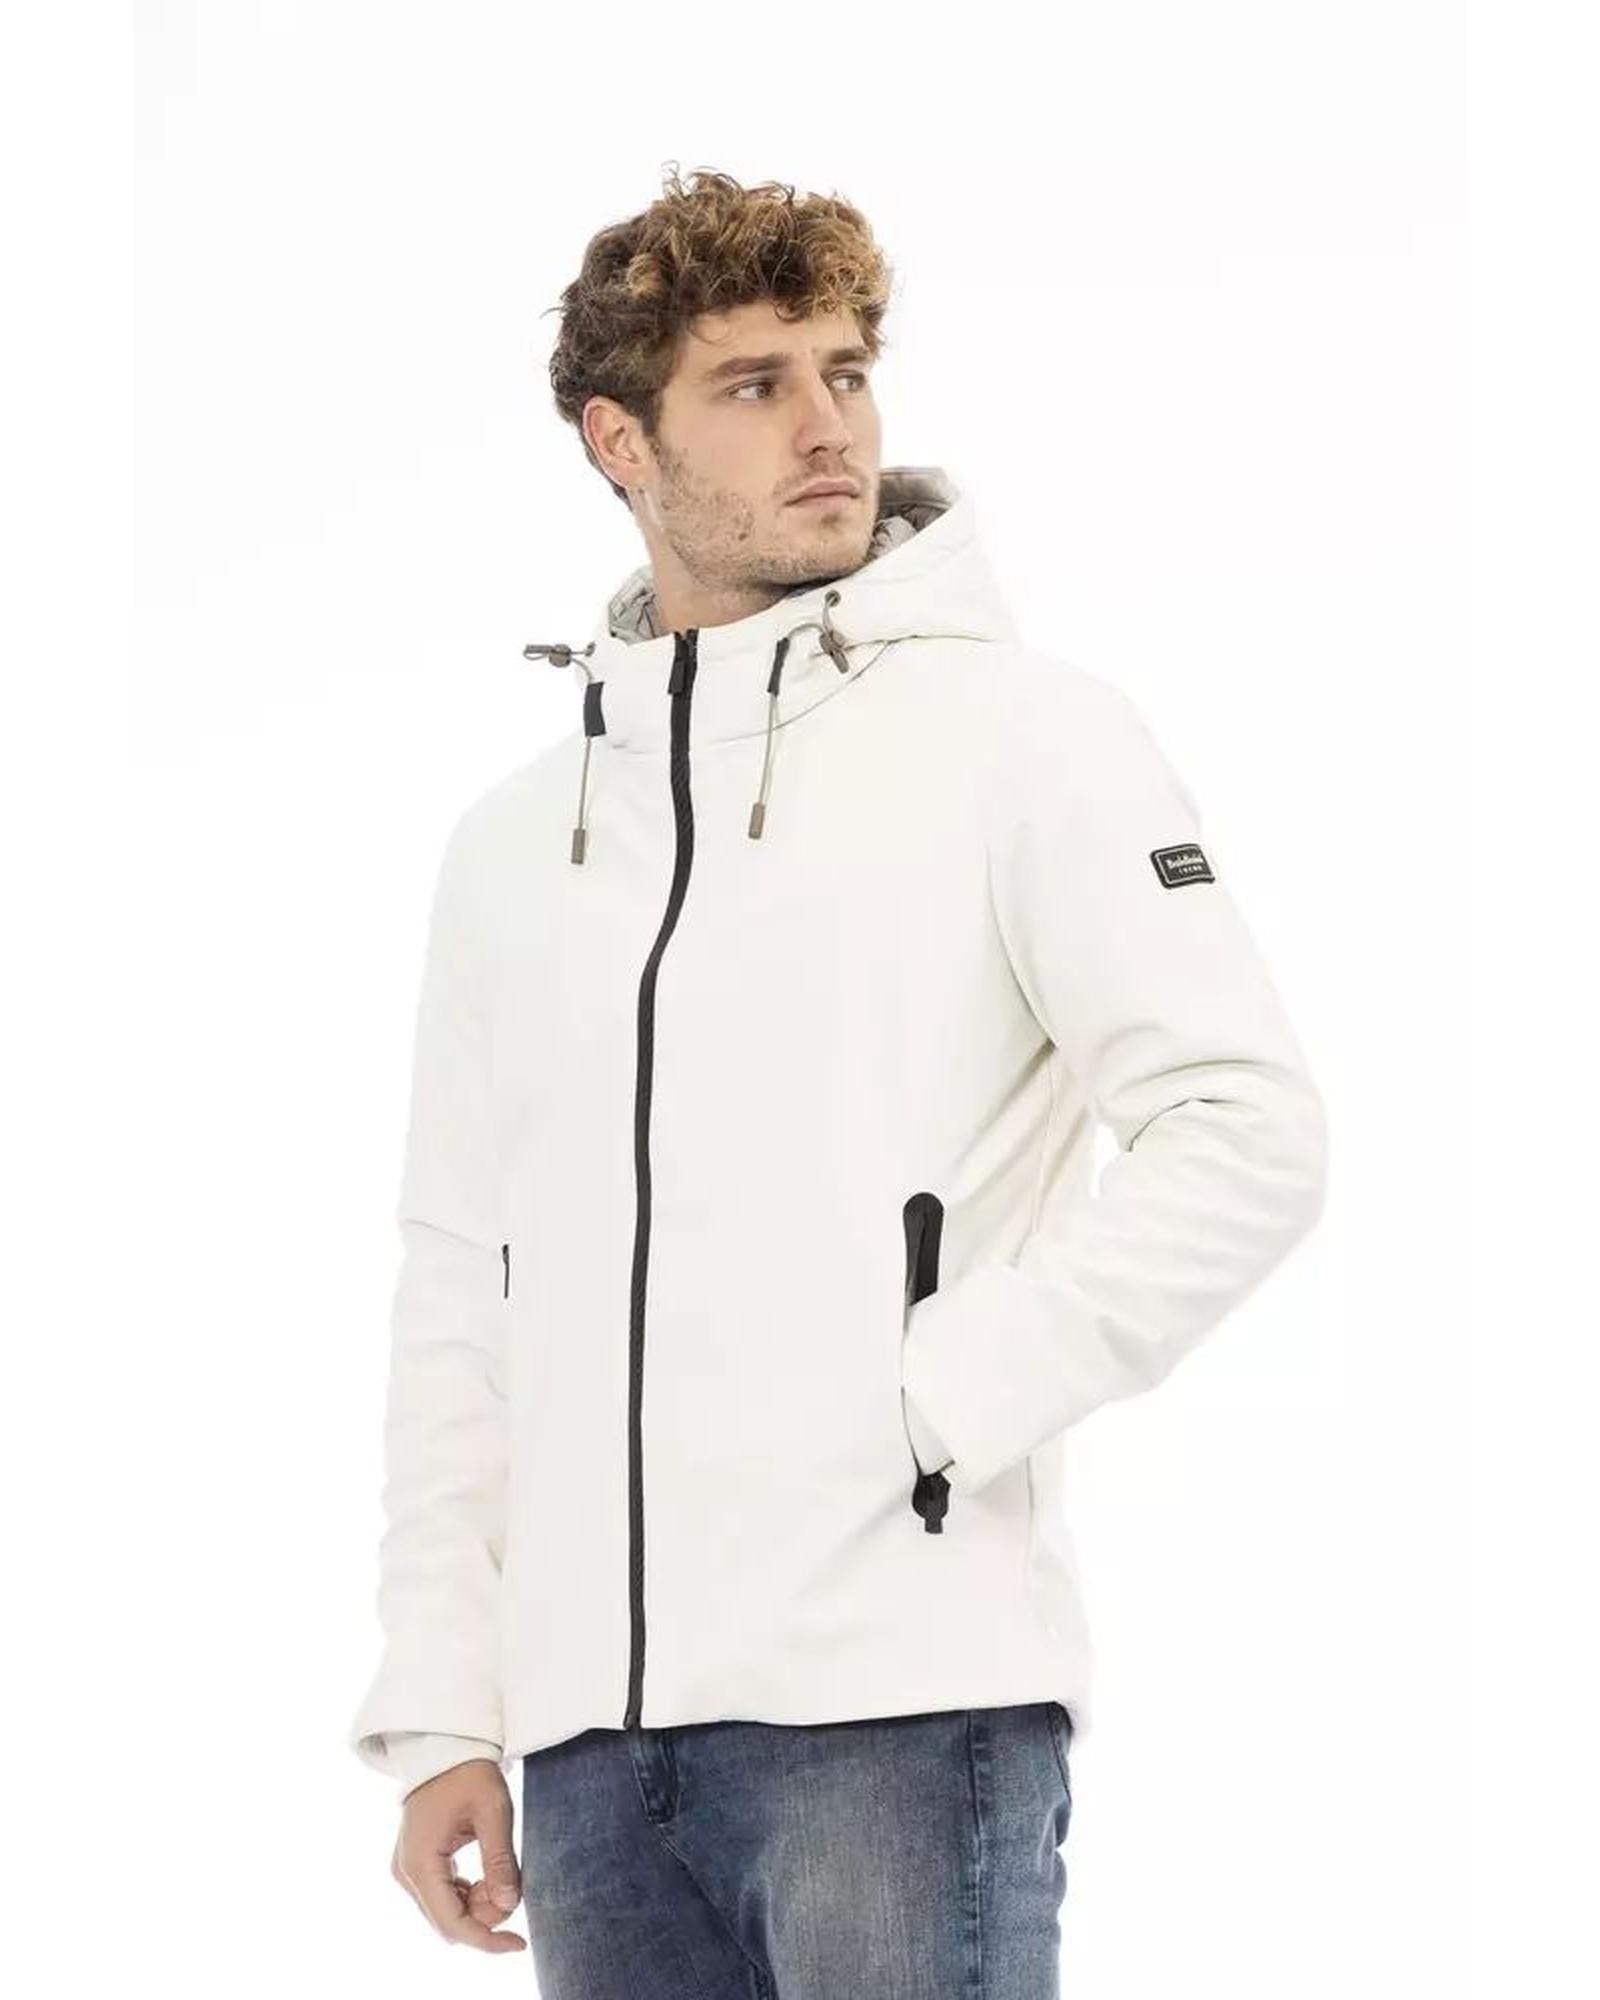 Baldinini Trend Men's White Polyester Jacket - XL